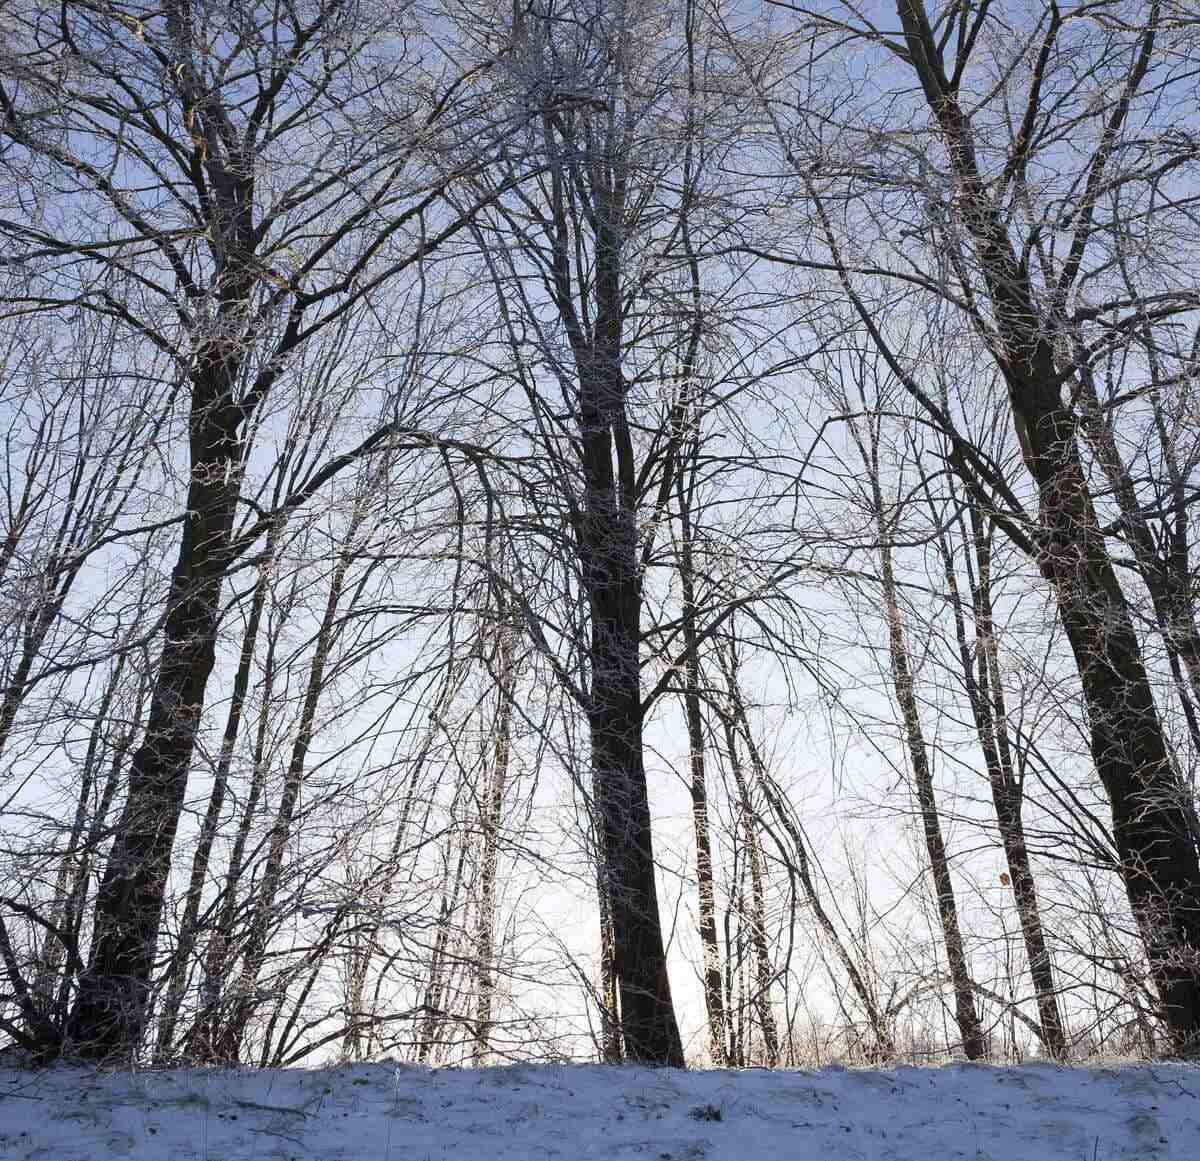 Deciduous trees in winter